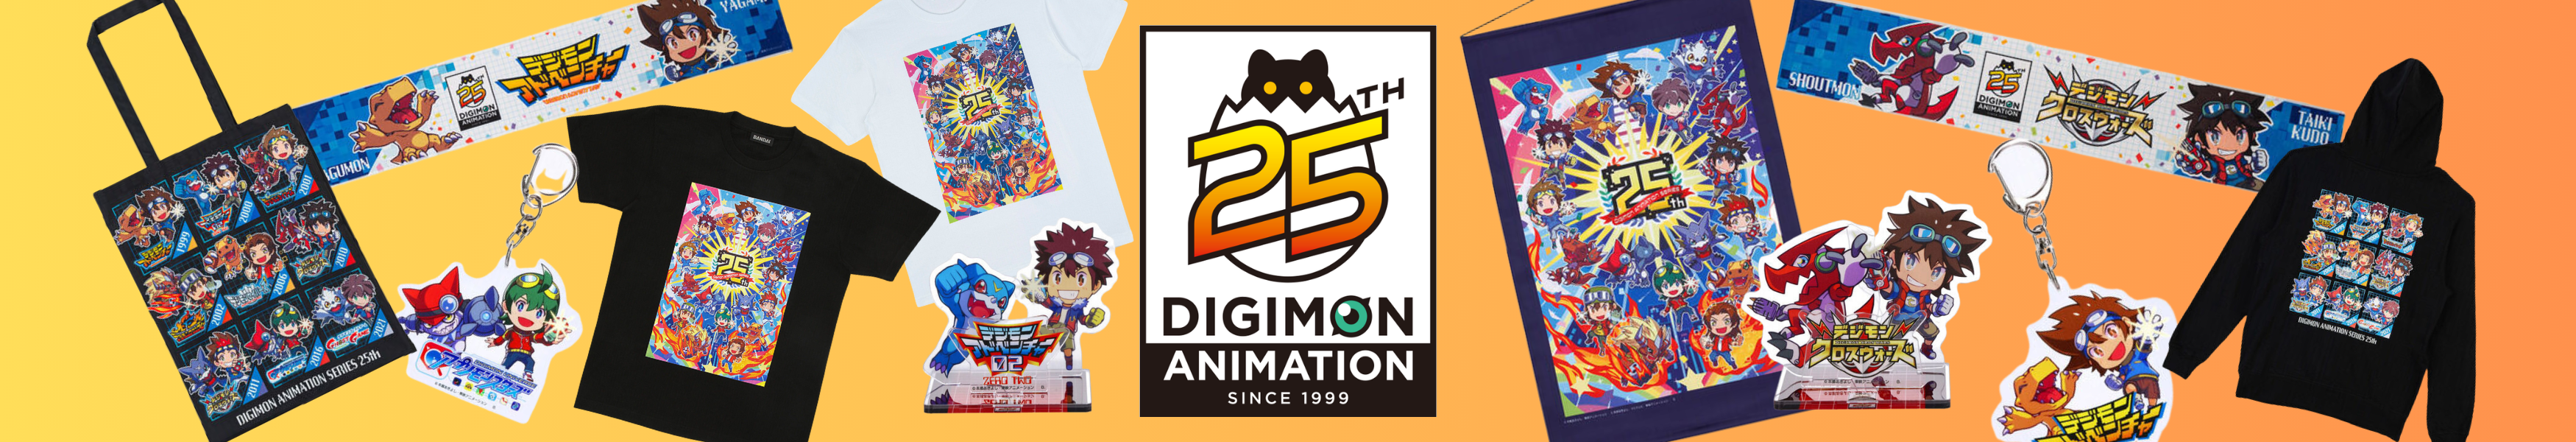 Digimon Adventure 25th Anniversary Merch